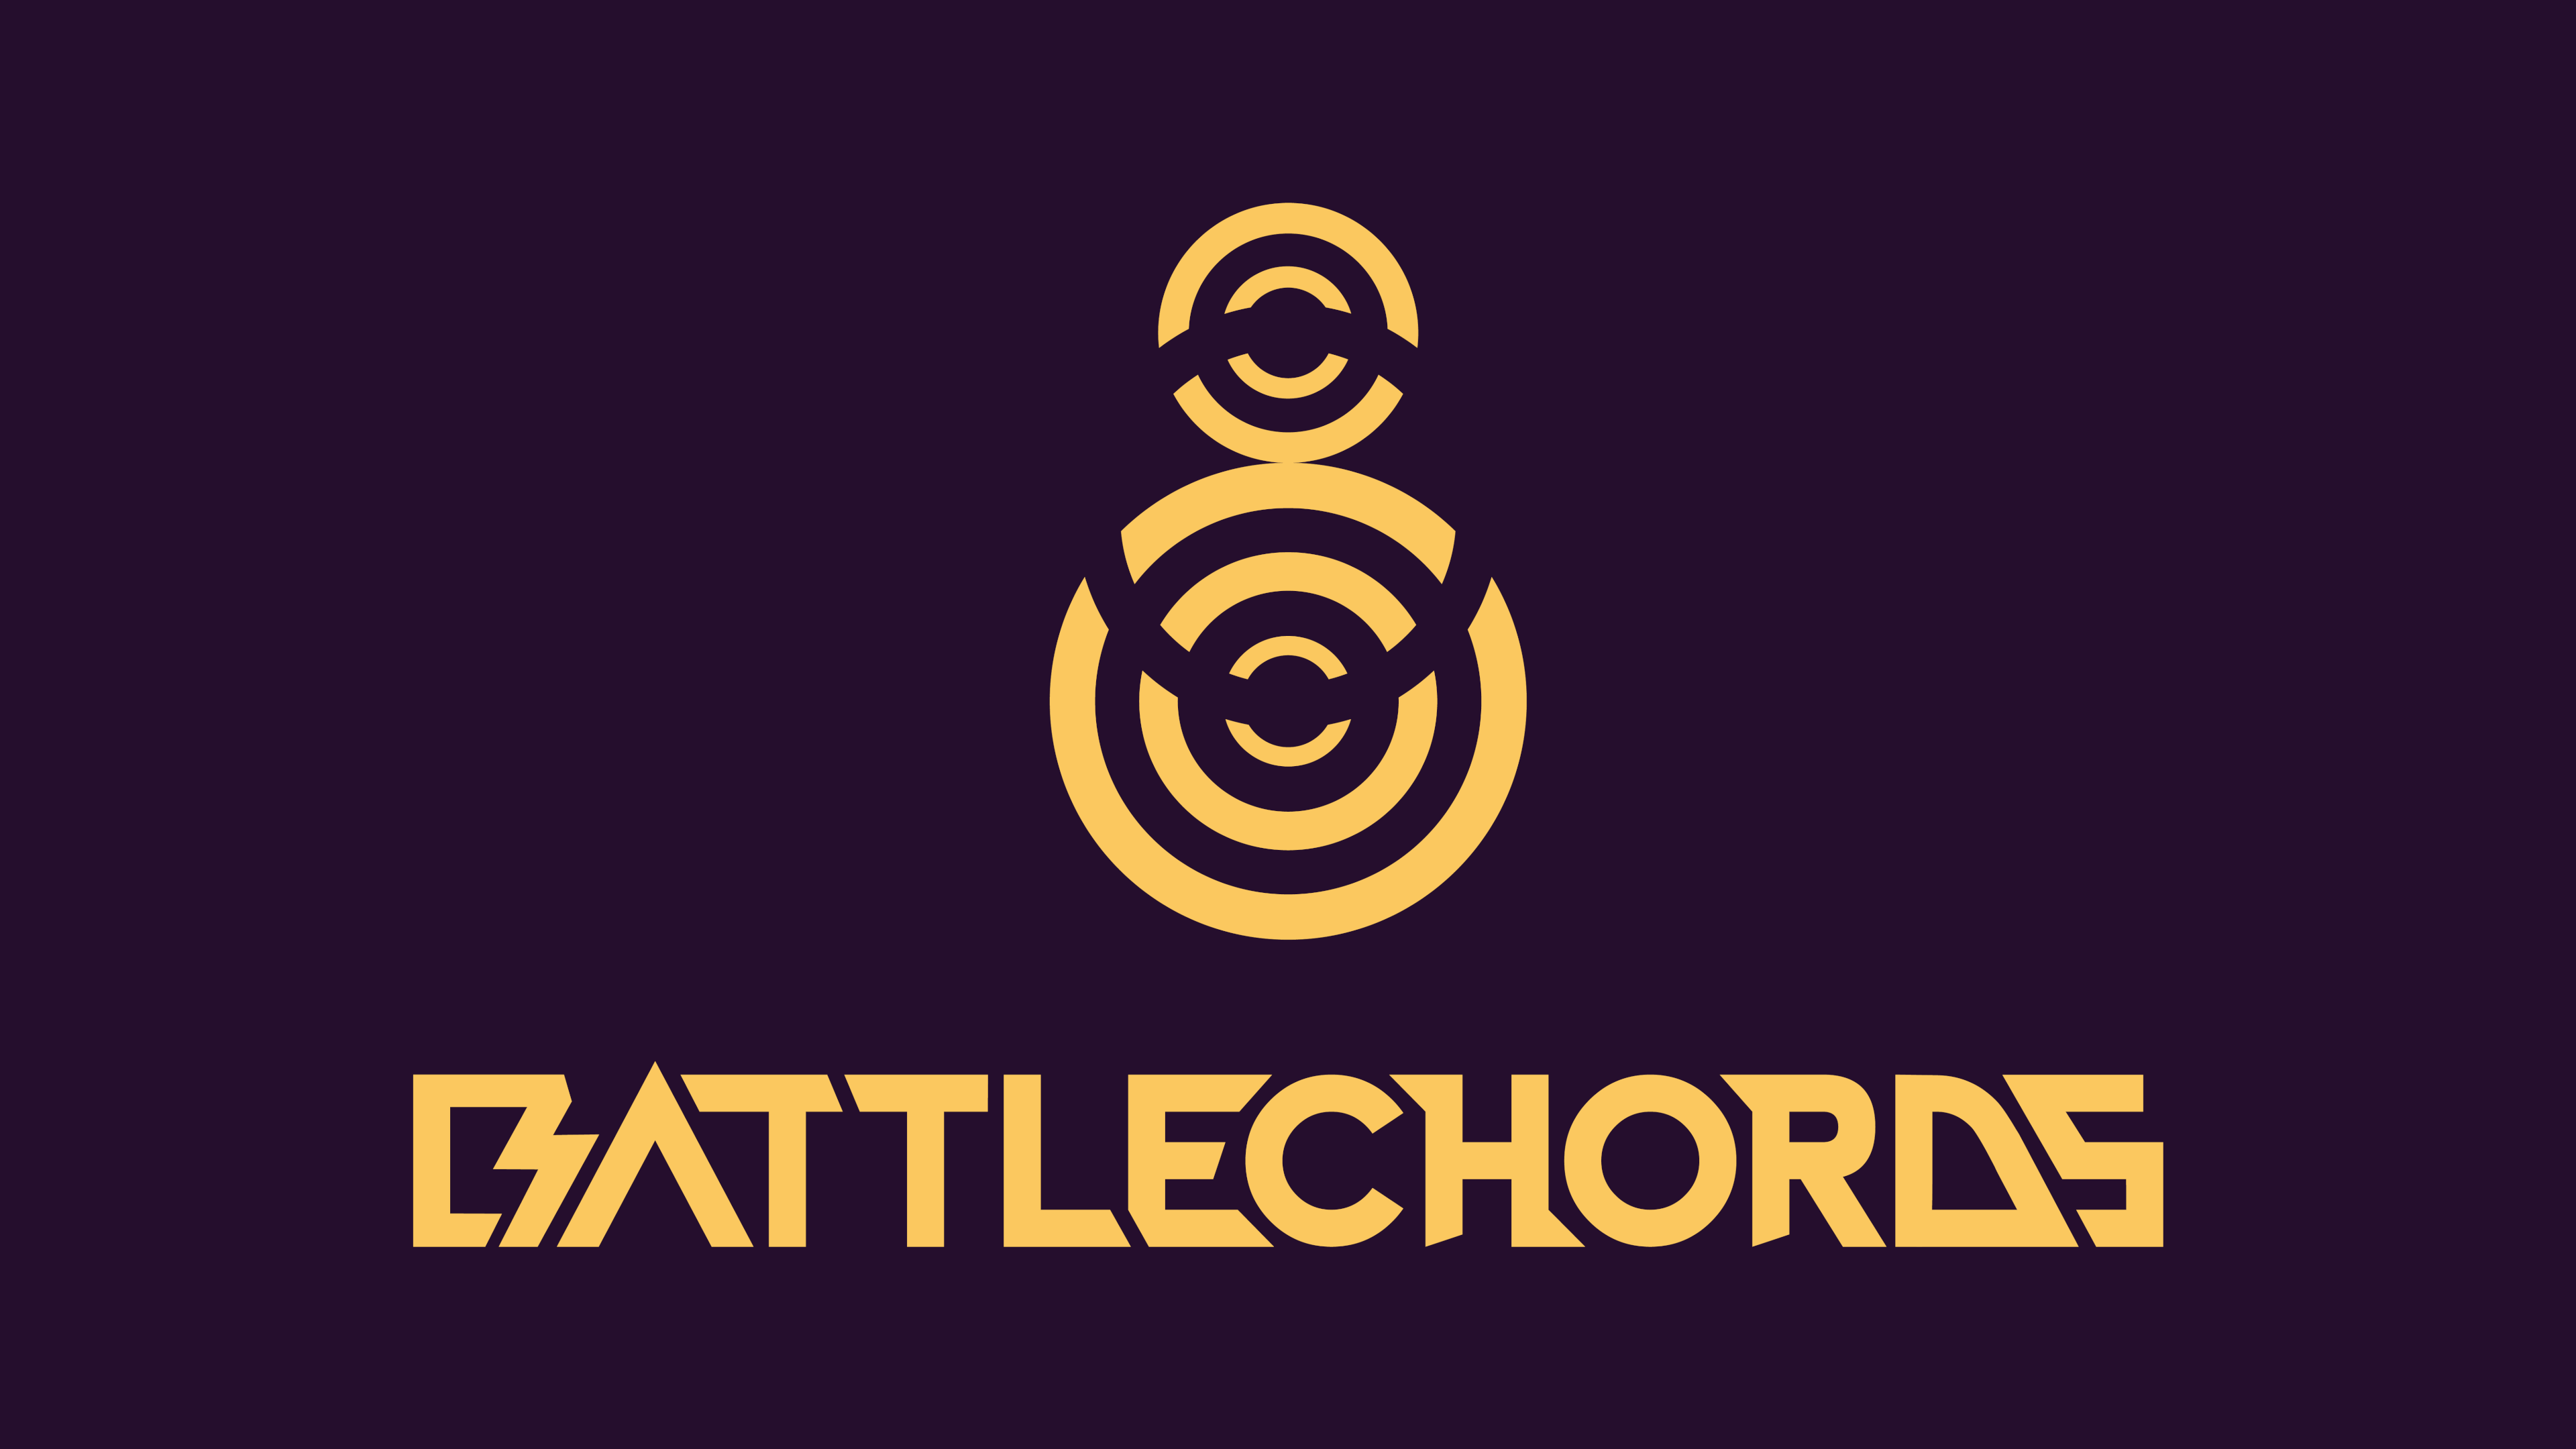 BattleChords